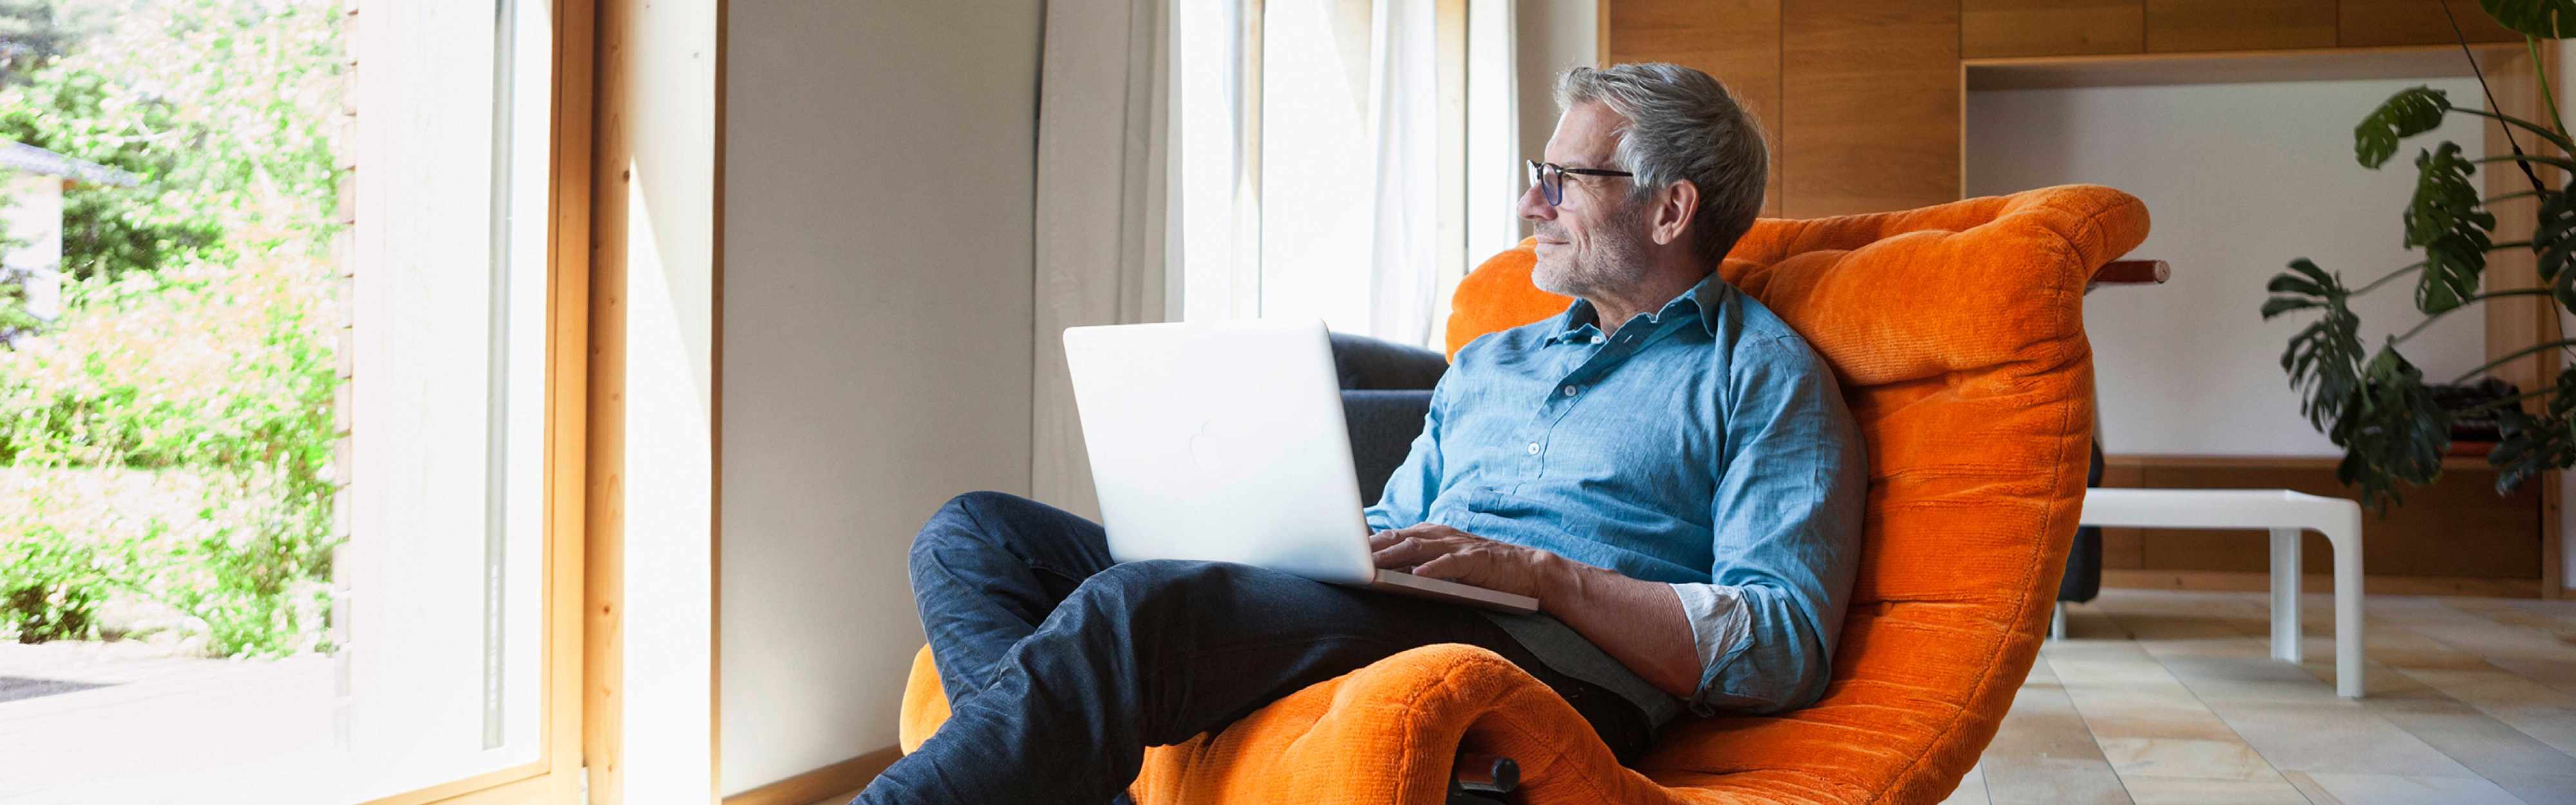 Älterer, zufriedener Mann in seinem Zuhause auf einem orangenem Sessel mit Laptop.